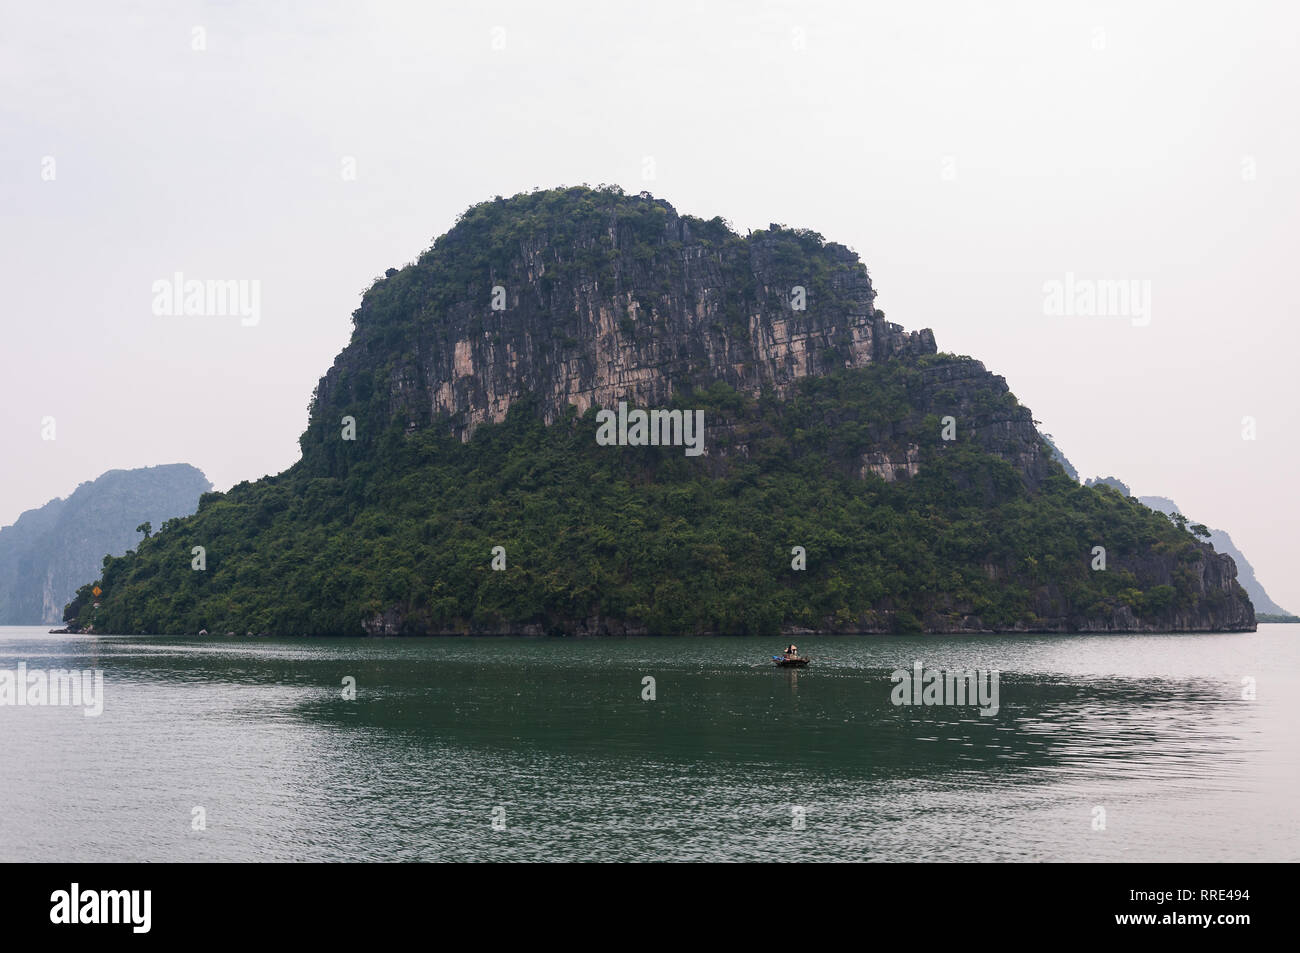 Una piccola barca a remi di fronte a una grande pietra calcarea isola carsica su una mattina nuvoloso, la baia di Ha Long, Vietnam Foto Stock